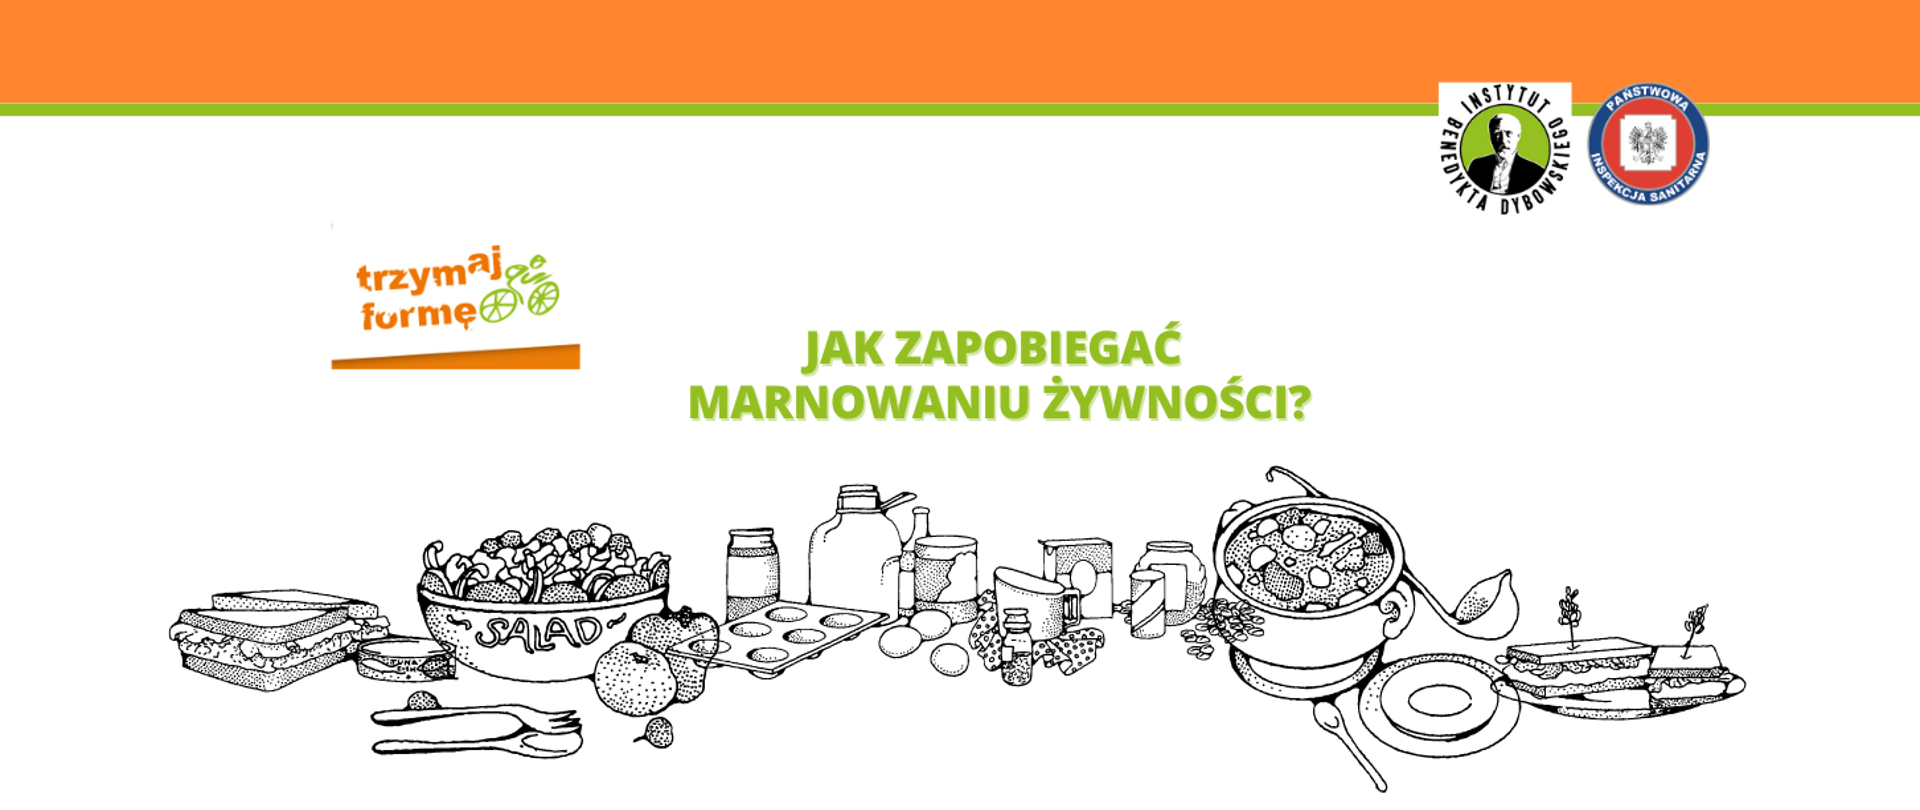 Na białym tle zielony napis "Jak zapobiegać marnowaniu żywności?" Poniżej napisu grafiki produktów żywnościowych.